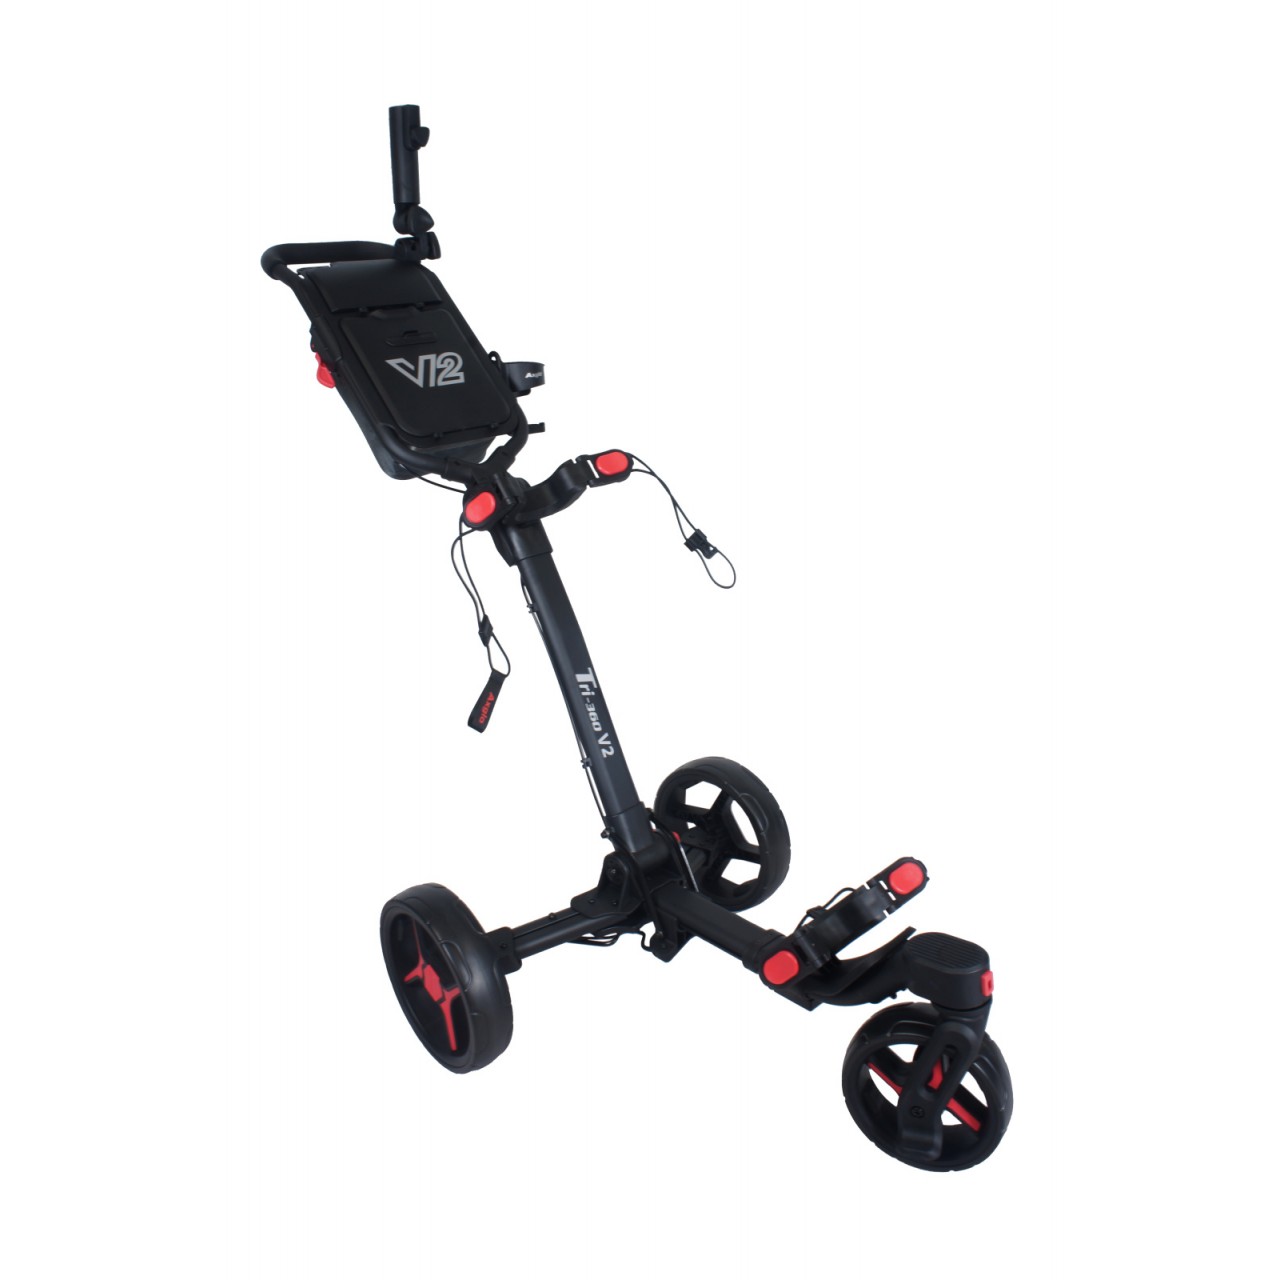 AXGLO Tri-360 V2 ruèní tøíkolový golfový vozík BLACK/RED + ZDARMA obal na kola - zvìtšit obrázek